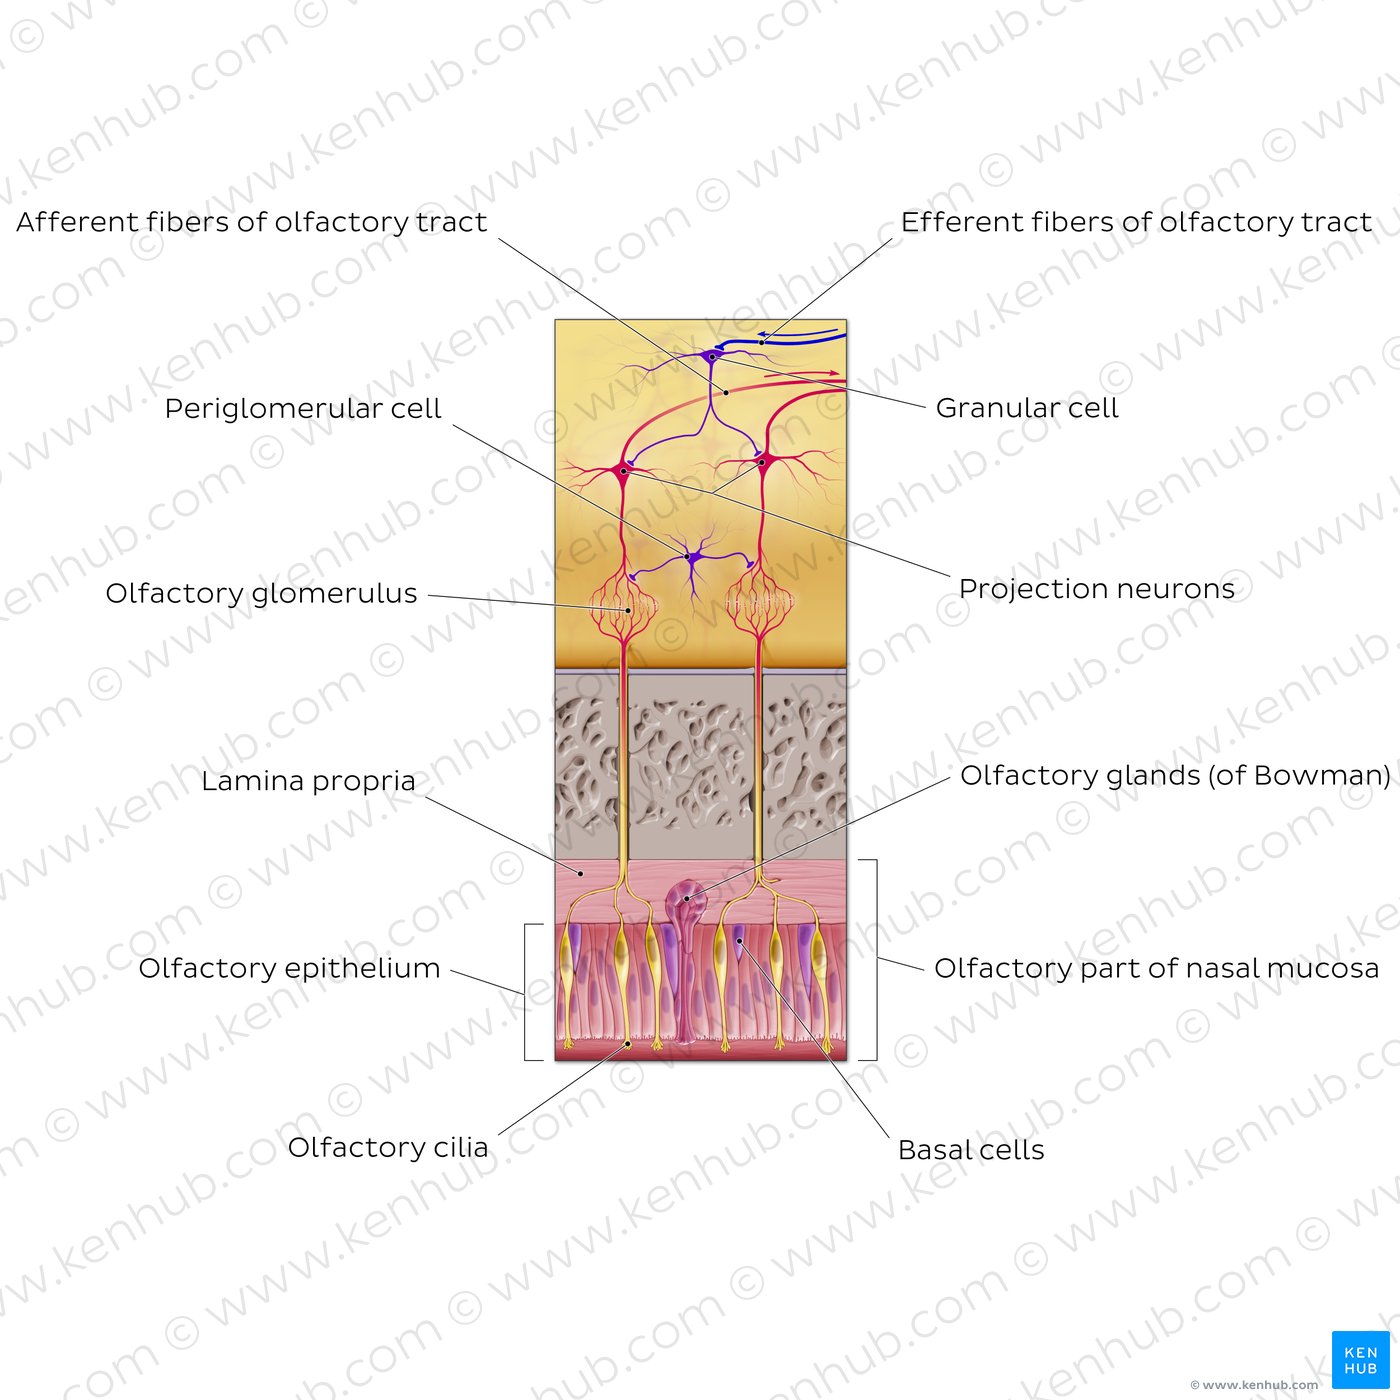 Olfactory nerve (olfactory fiber bundles and bulb)